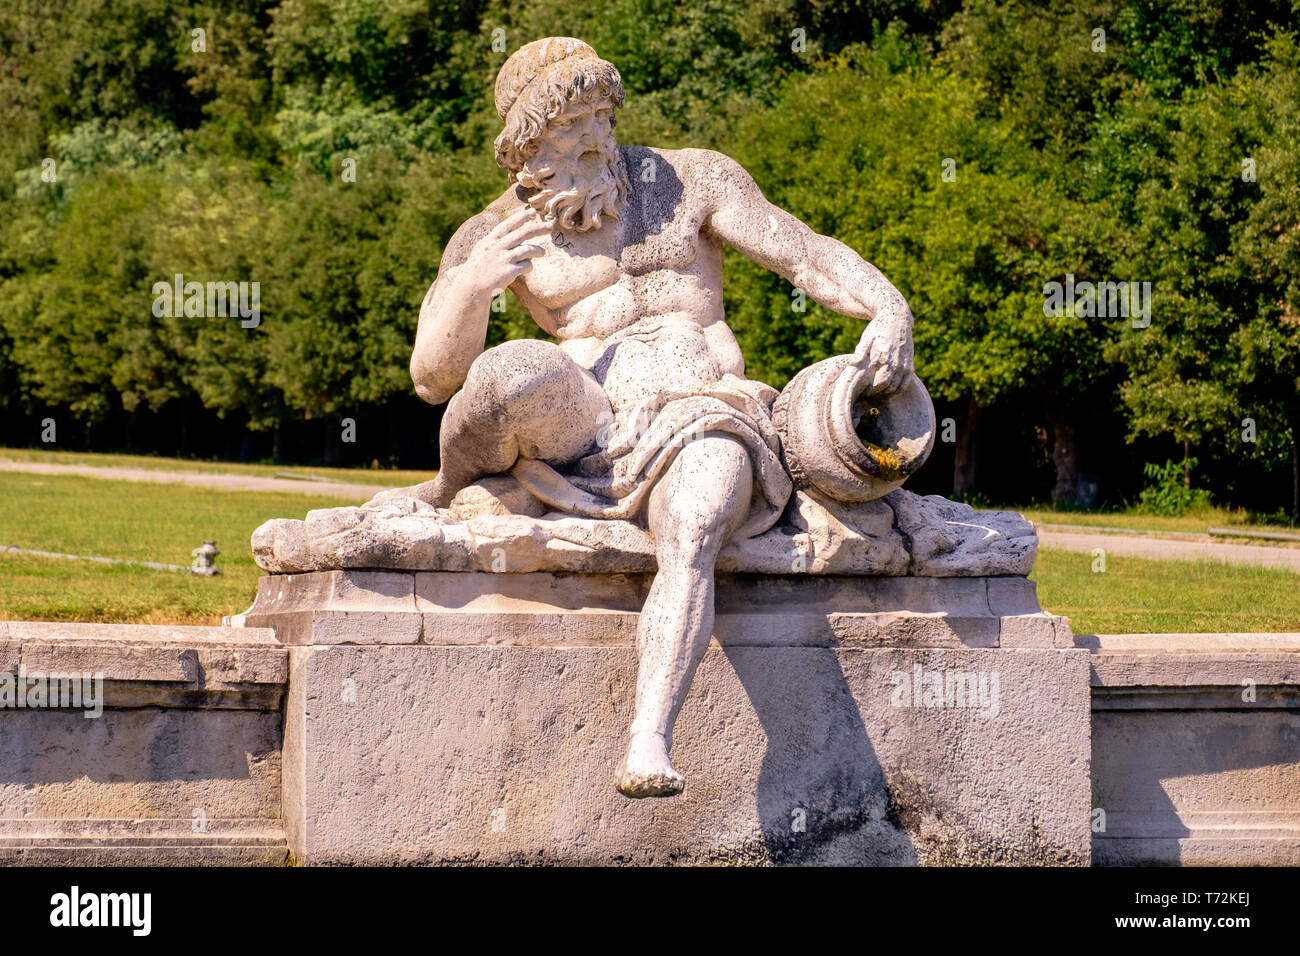 C'est une statue d'un dieu fleuve à la Fontaine de Cérès, dans les jardins royaux de la "Reggia di Caserta'. Mythologie joue un rôle important dans la st Banque D'Images